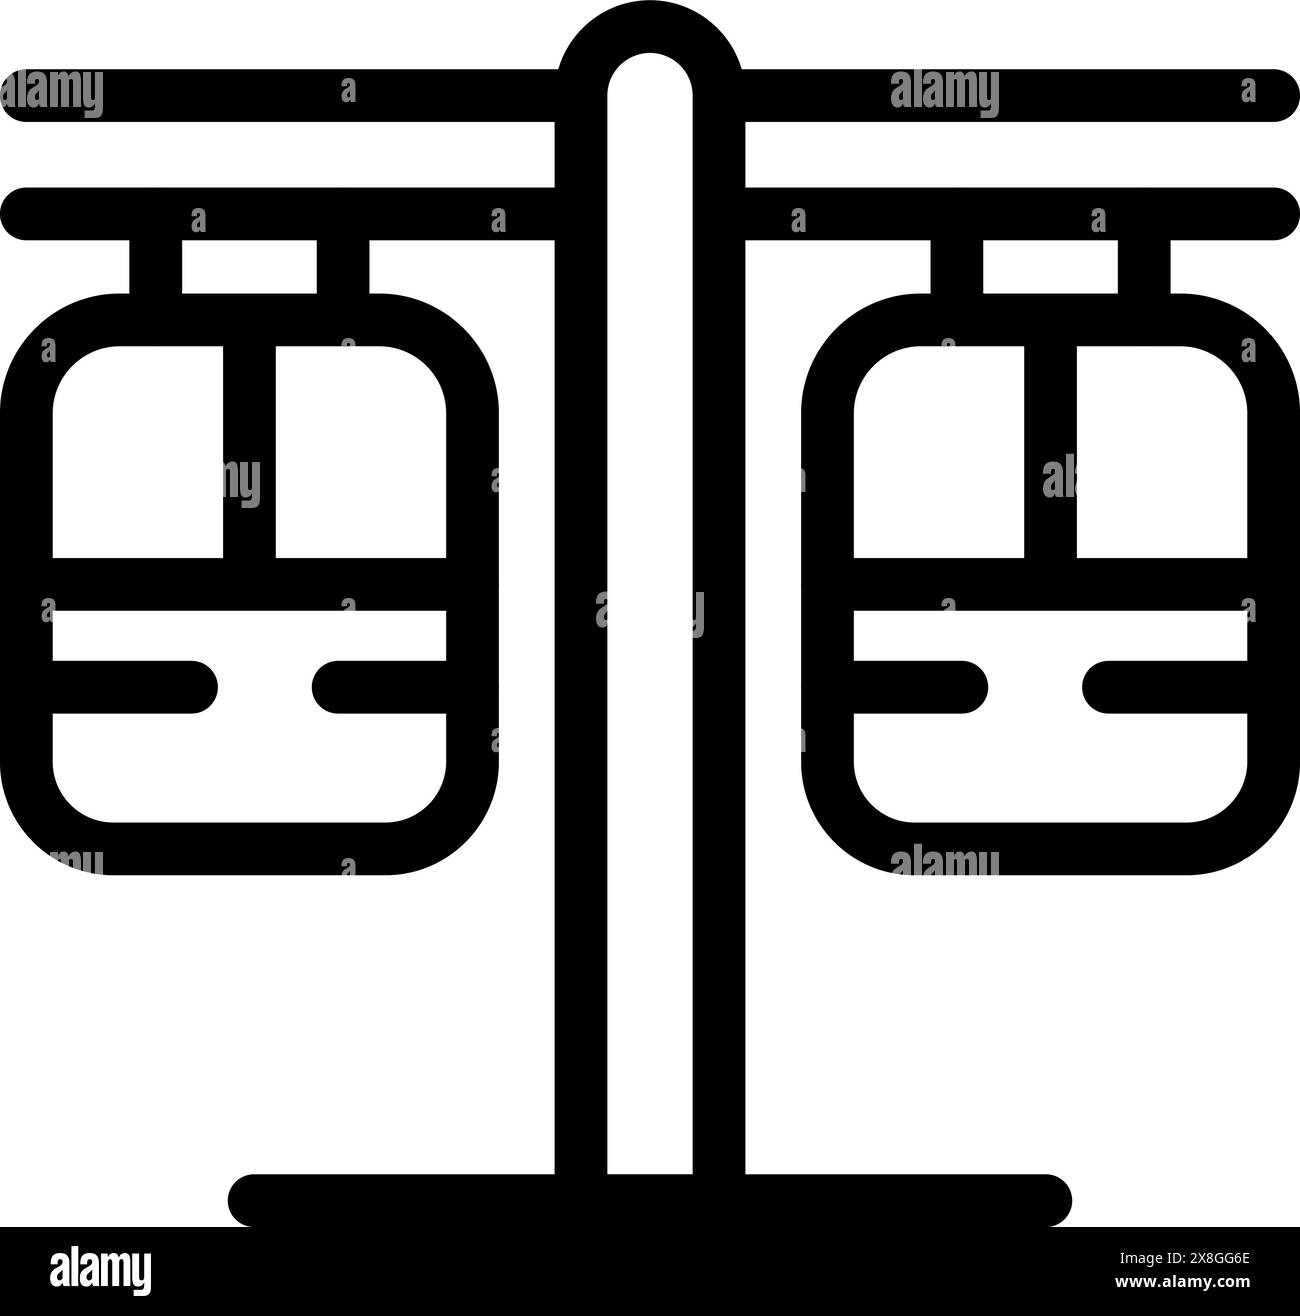 Schwarz-weiße Vektor-Illustration einer Seilbahn in einem flachen Design-Stil Stock Vektor